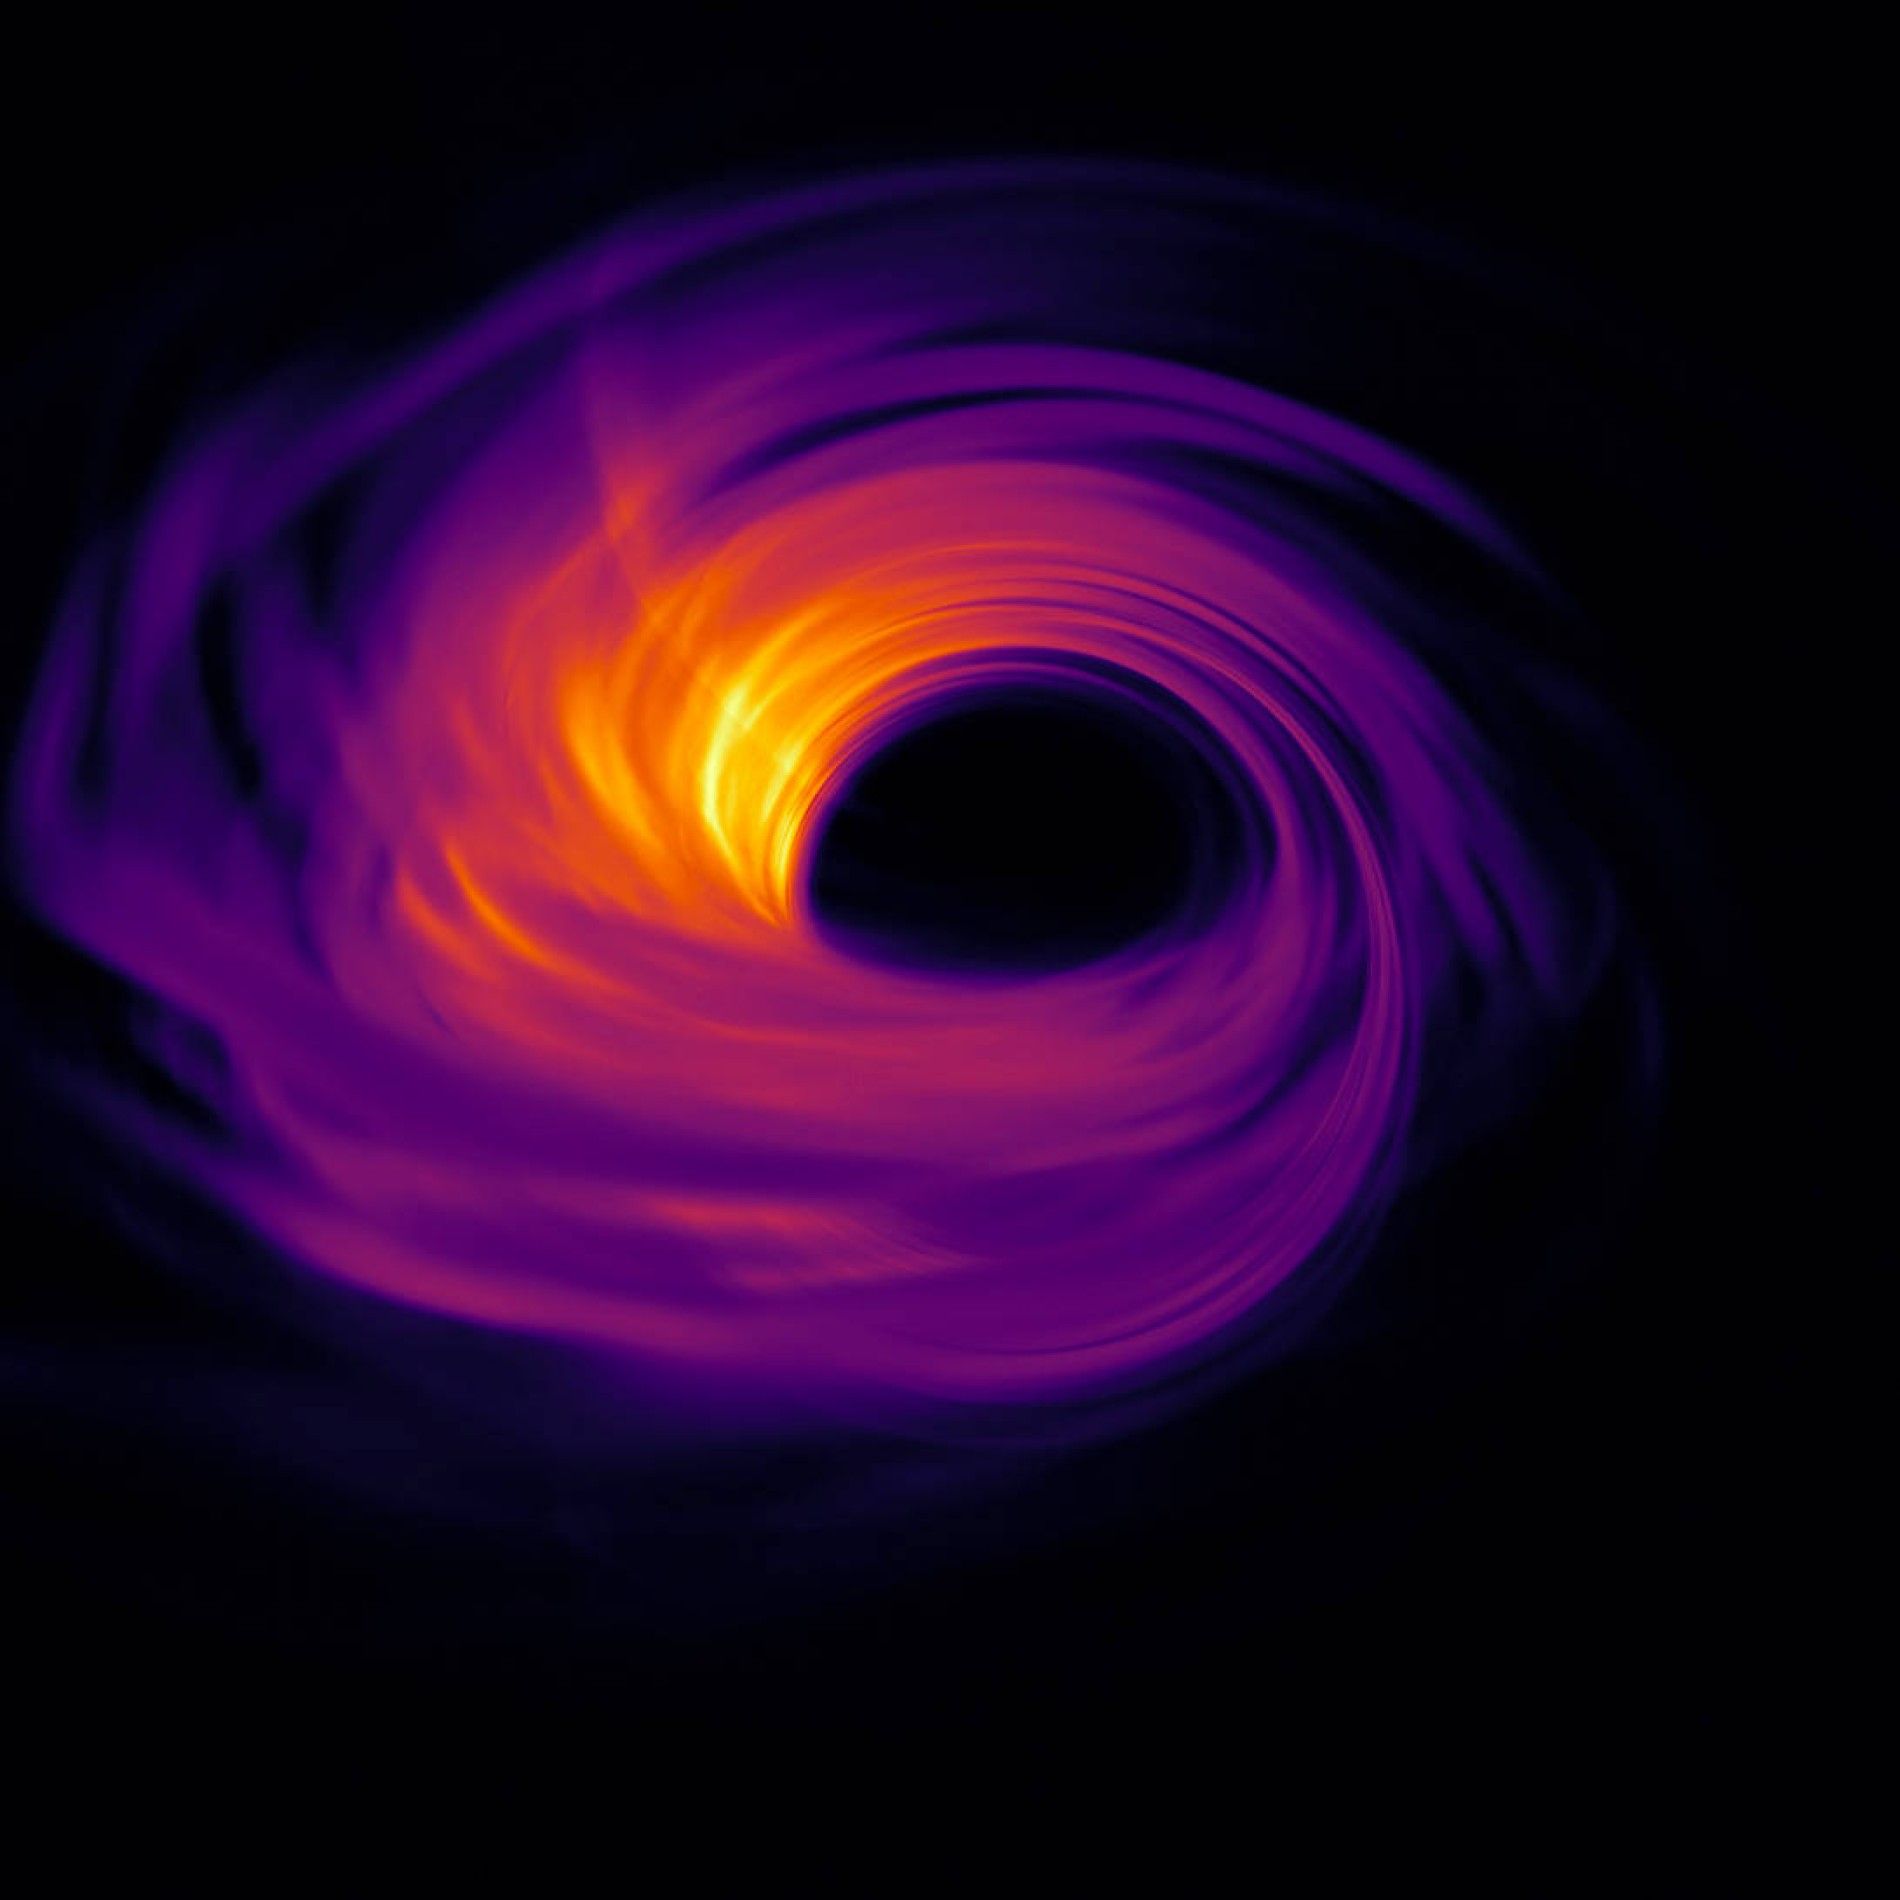  Schwarzes Loch Hintergrundbild 1900x1900. Luciano Rezzolla spricht über den Blick ins Schwarze Loch